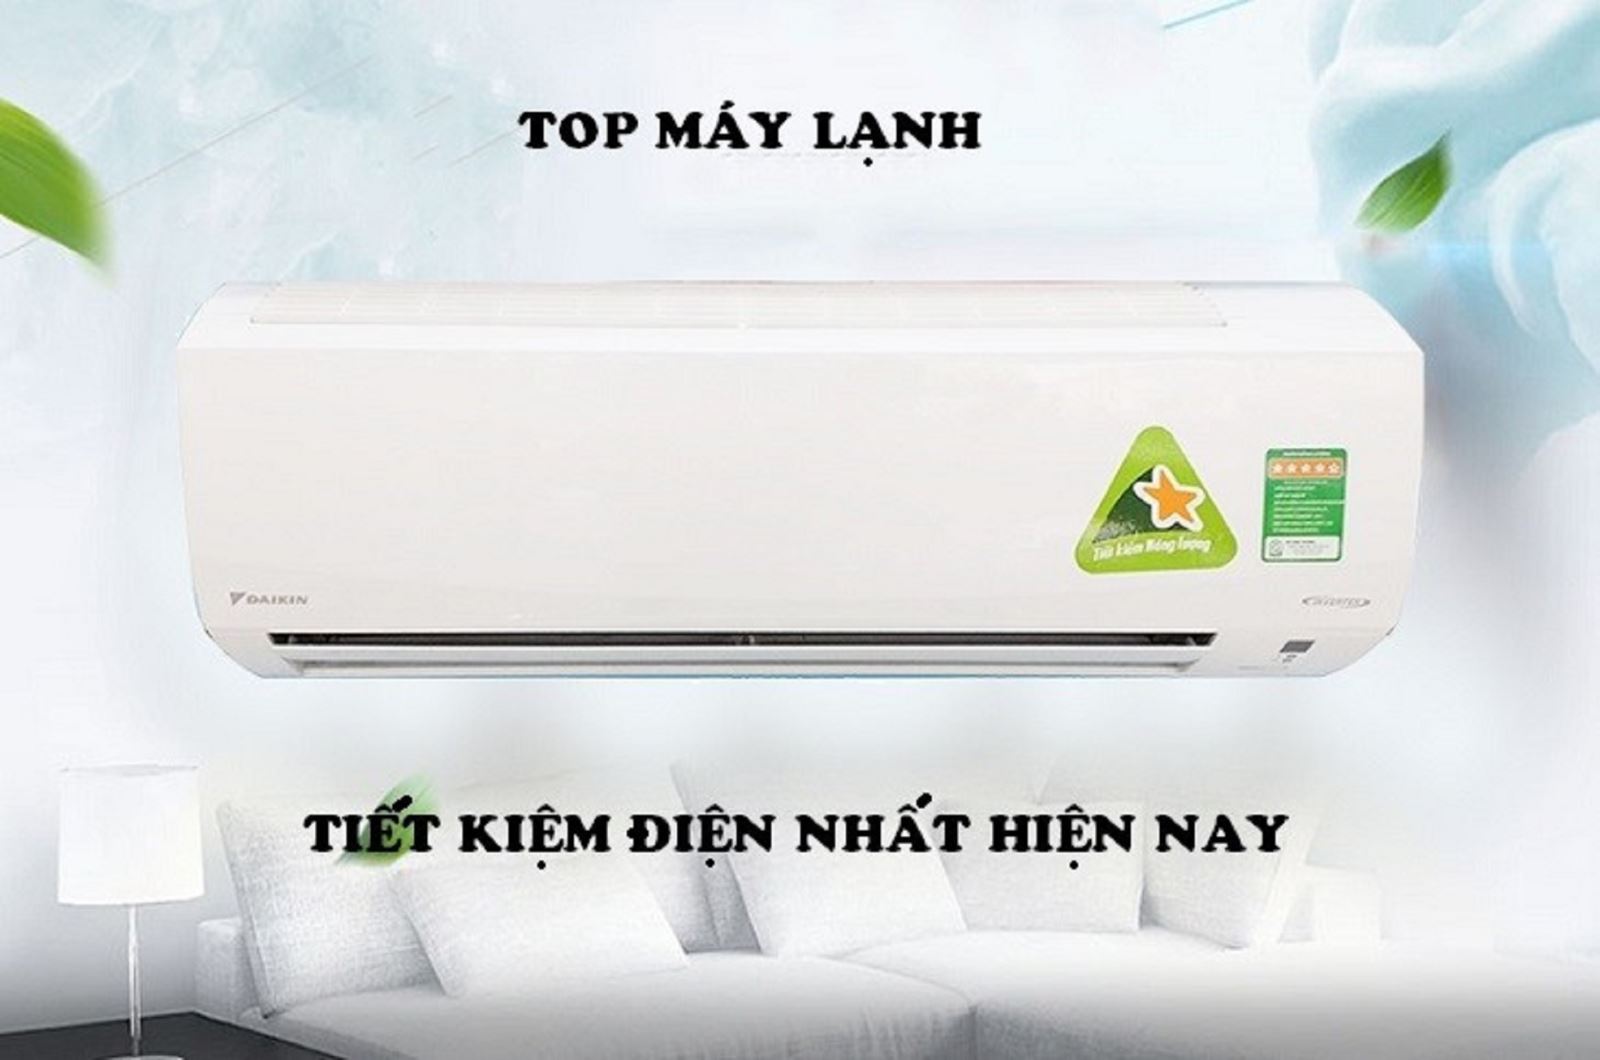 Top 5 máy lạnh tiết kiệm điện tốt nhất hiện nay